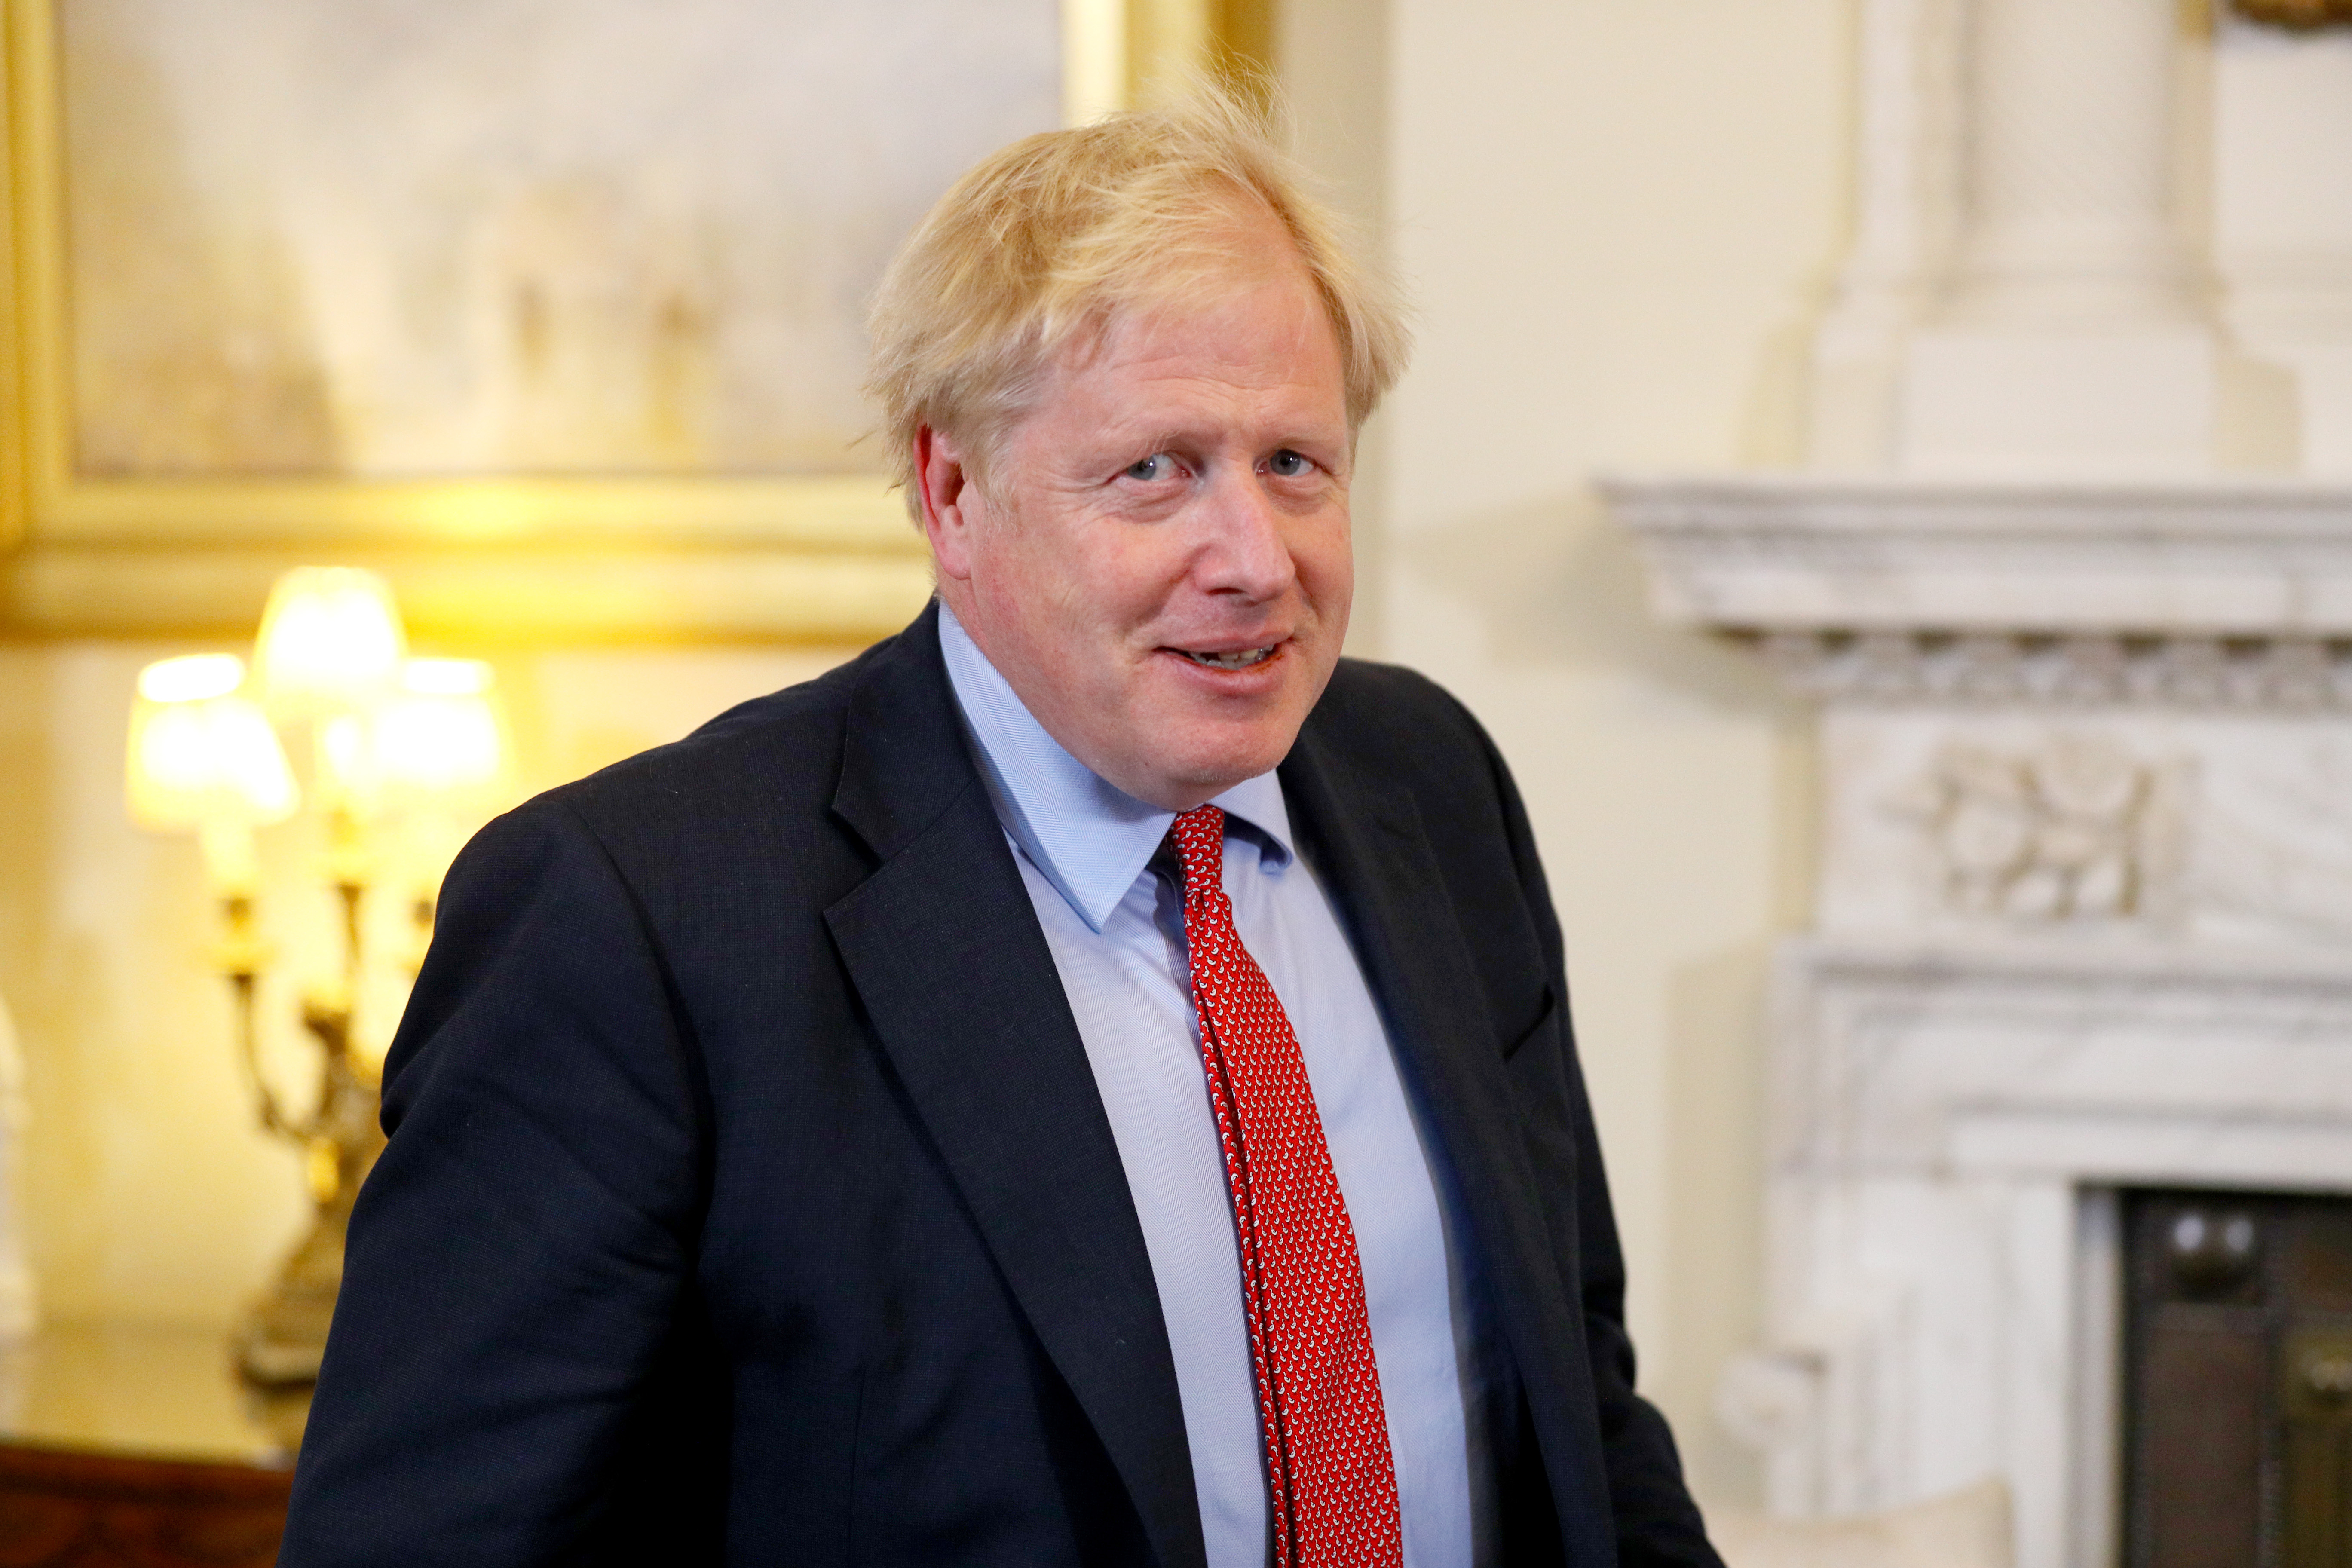 Corbyn will attack the farce of Johnson's government